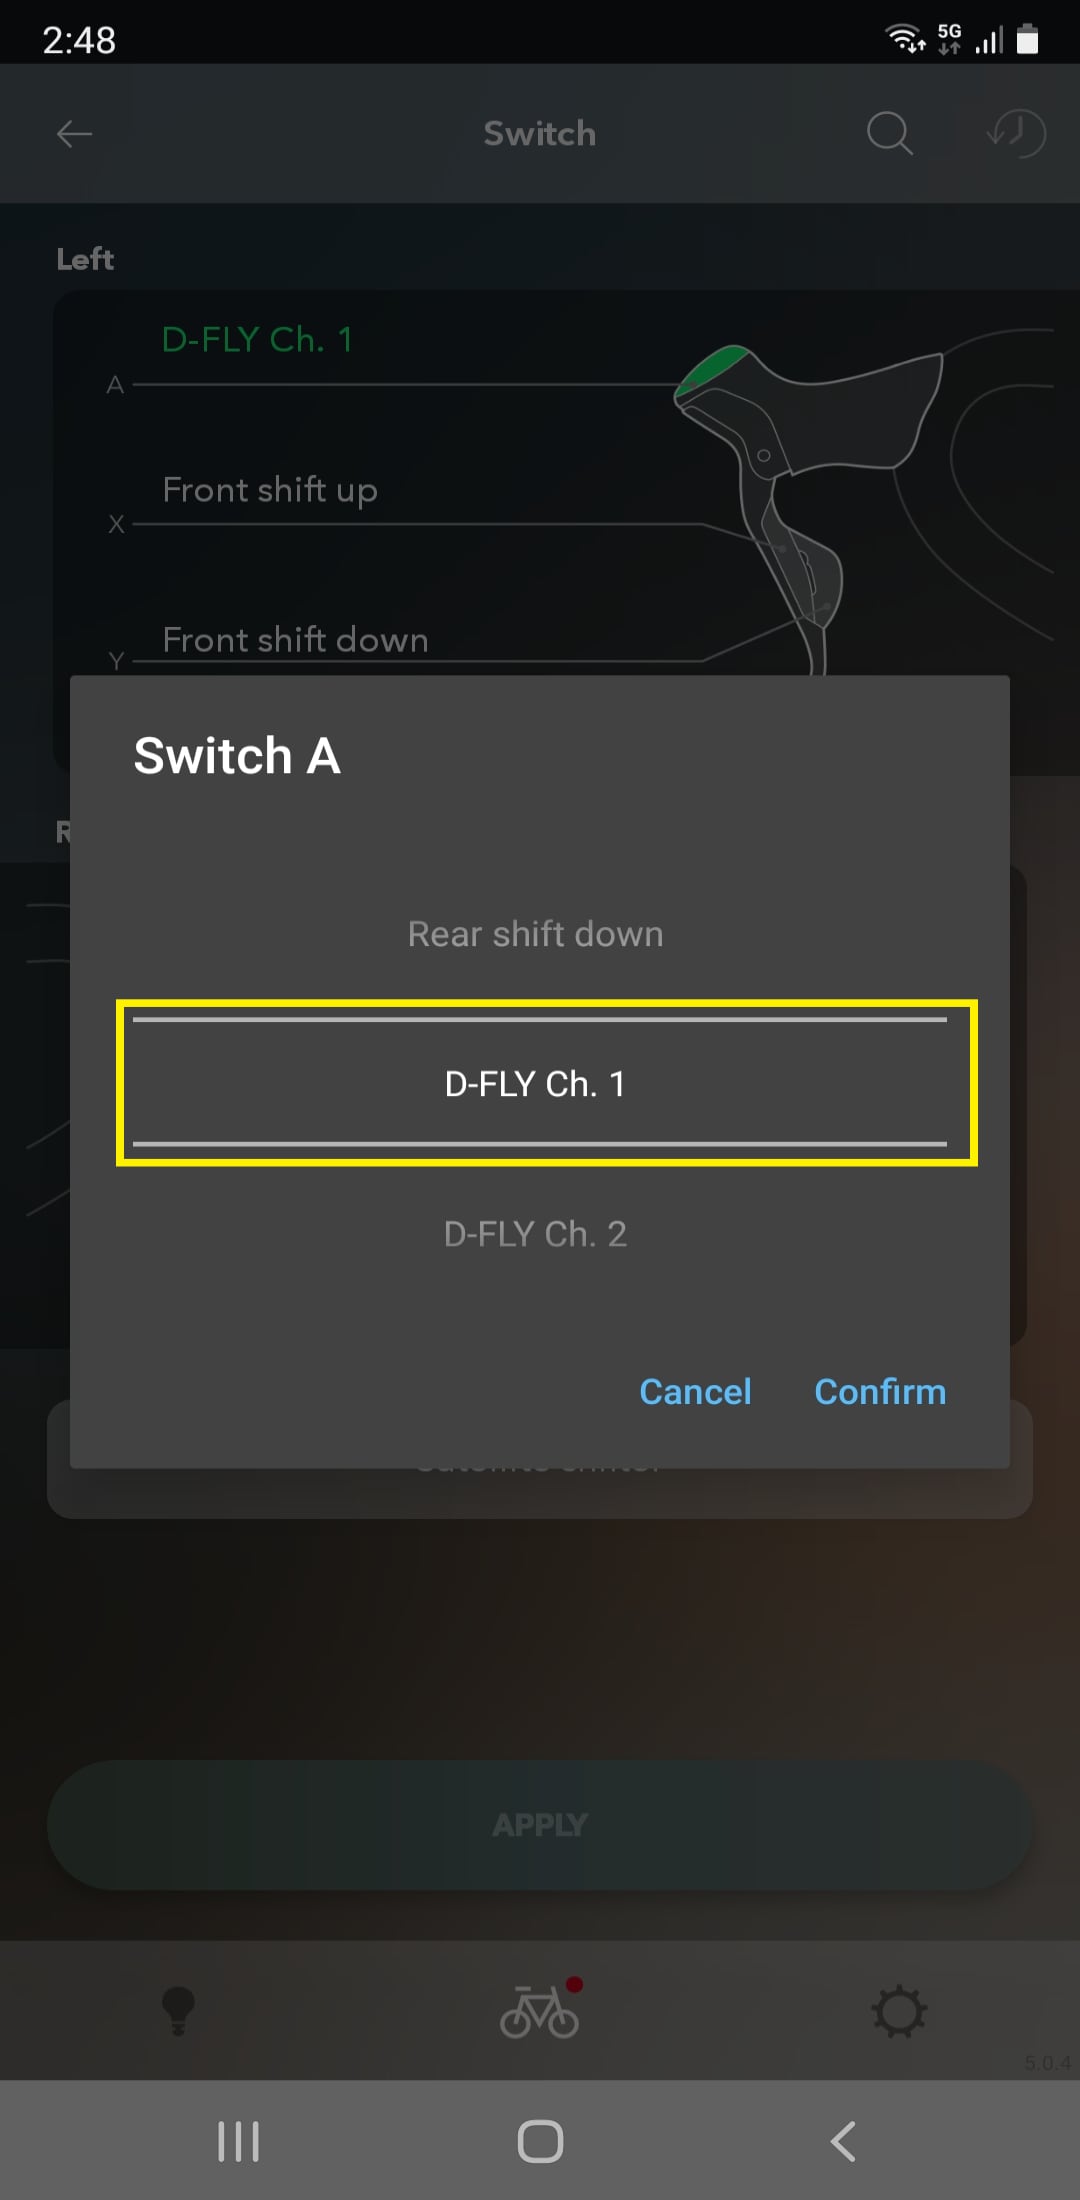 Sélectionnez un canal D-FLY entre 1 et 4.